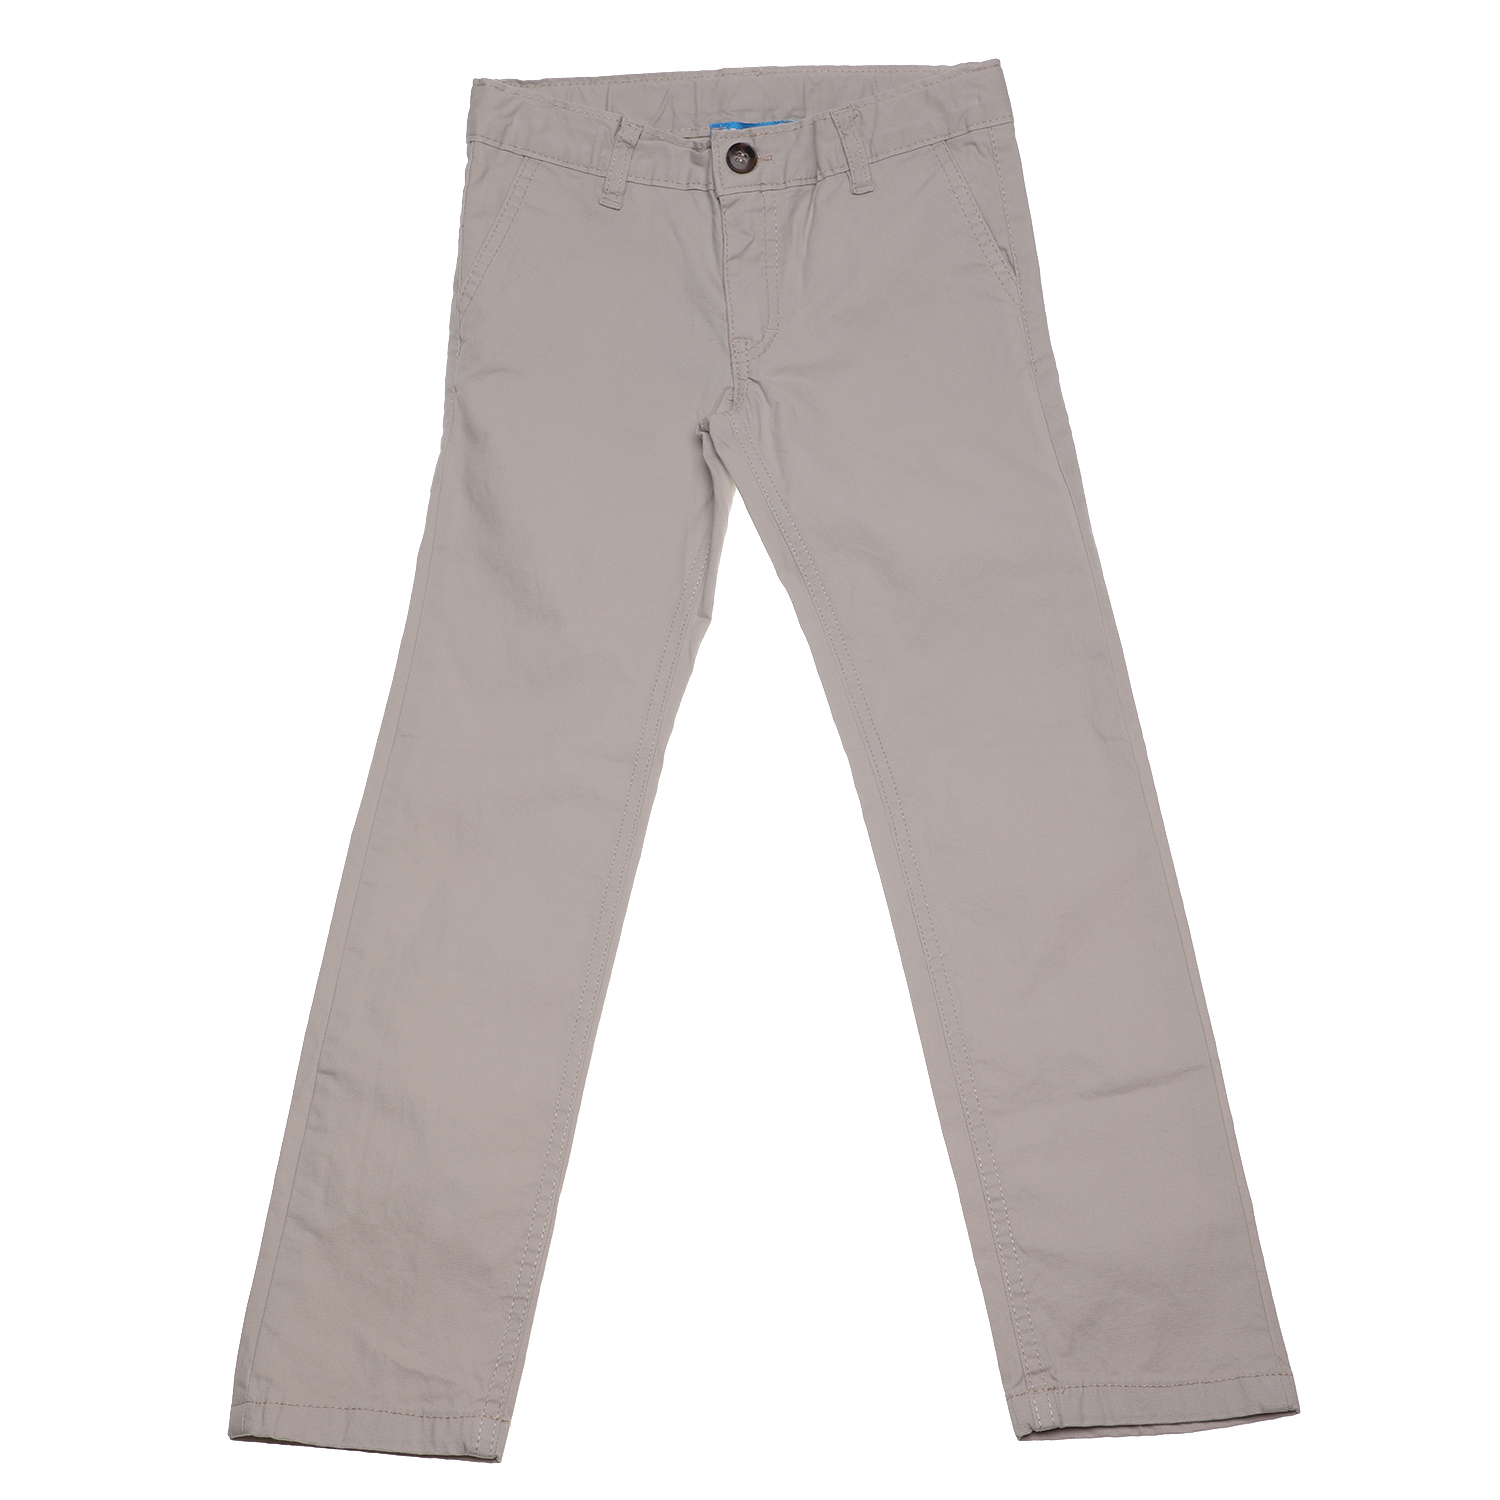 Παιδικά/Boys/Ρούχα/Παντελόνια SAM 0-13 - Παιδικό παντελόνι chino SAM 0-13 μπεζ